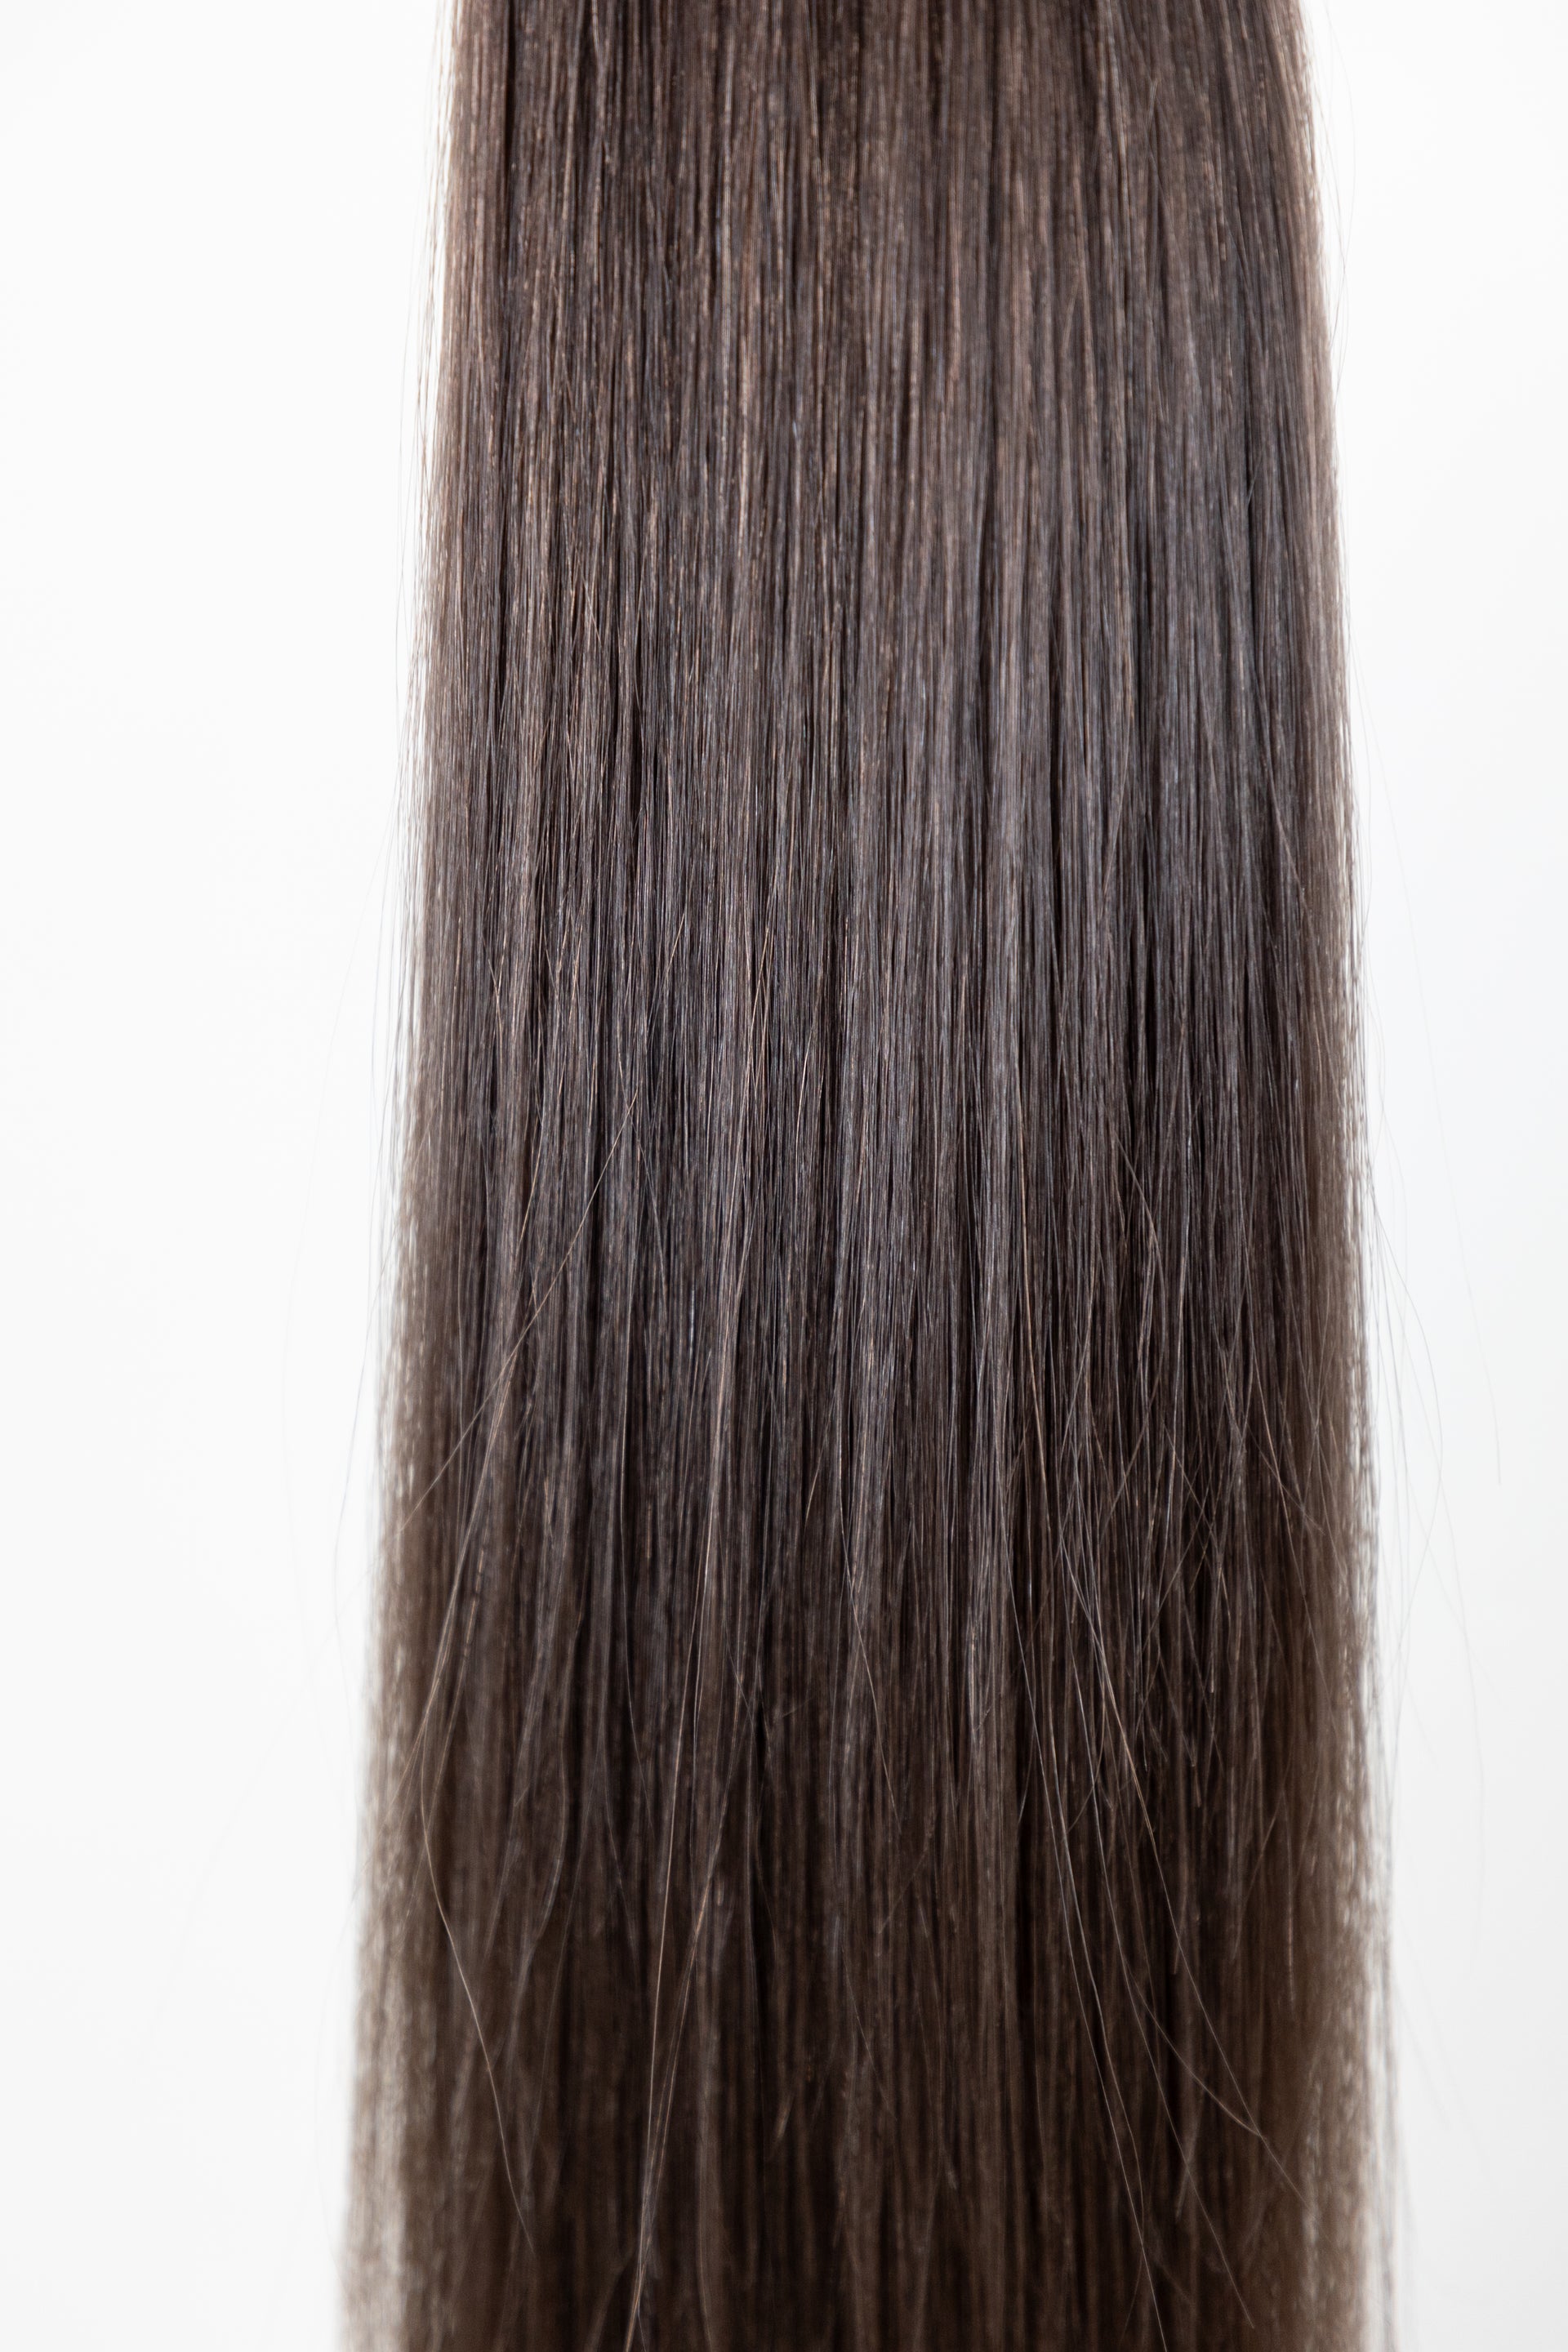 #3 (Medium Brown) European Virgin Remy Human Hair, Bulk